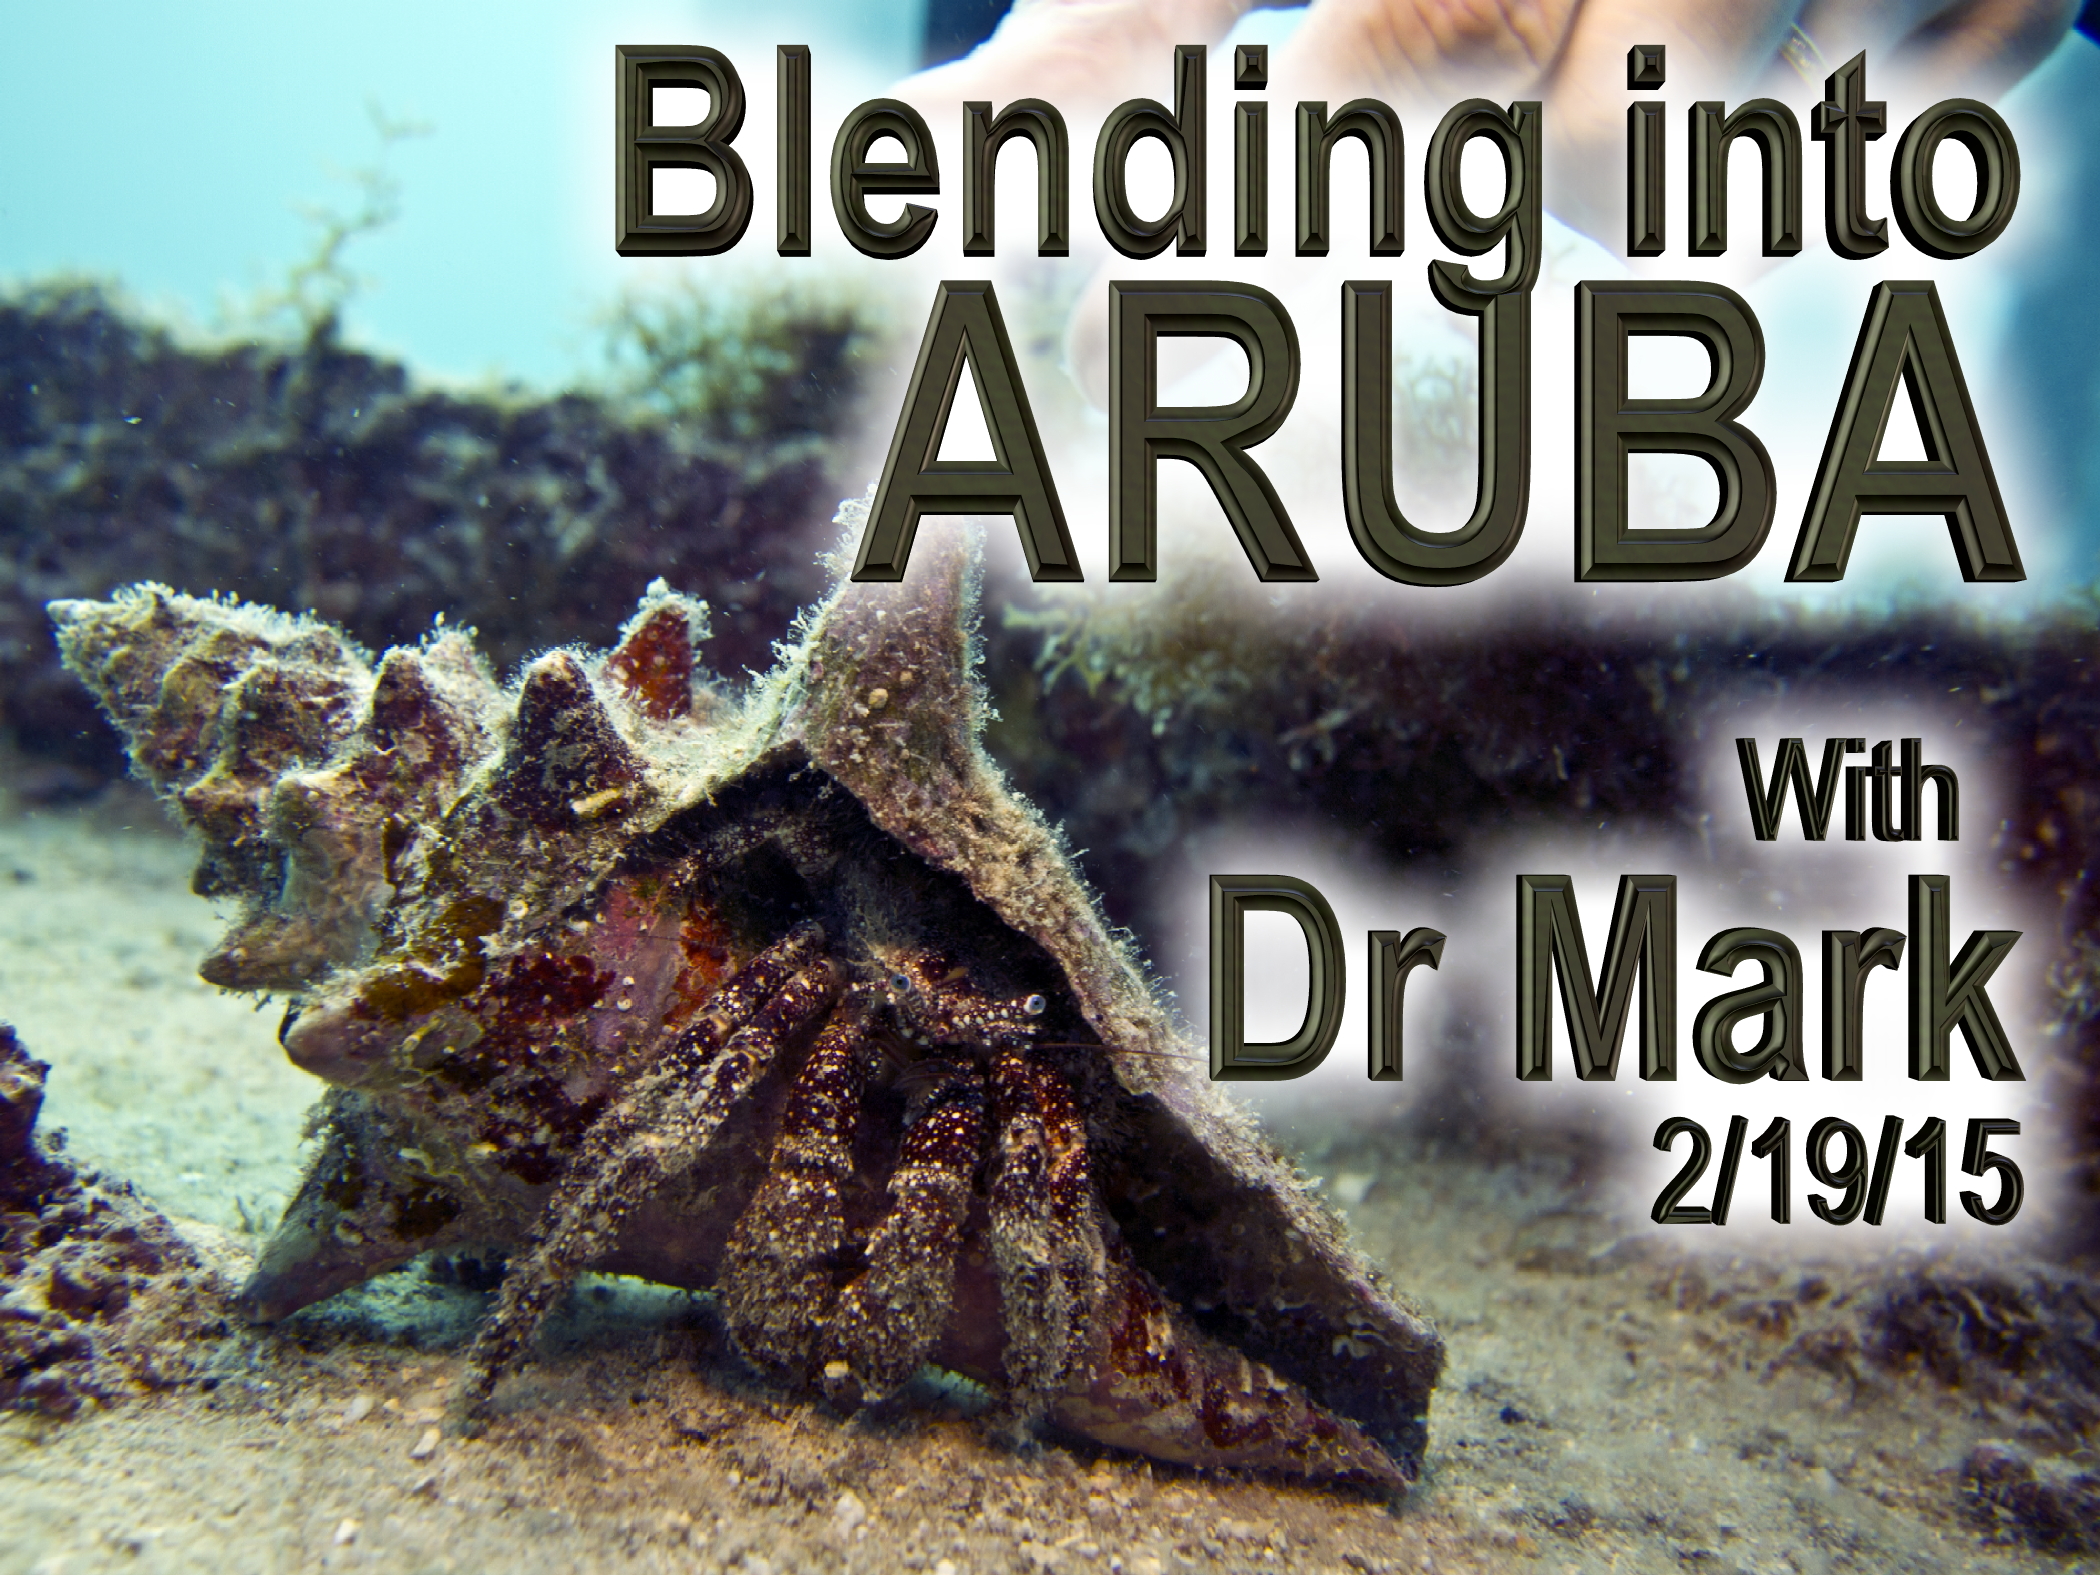 Blending into Aruba 2-19-15